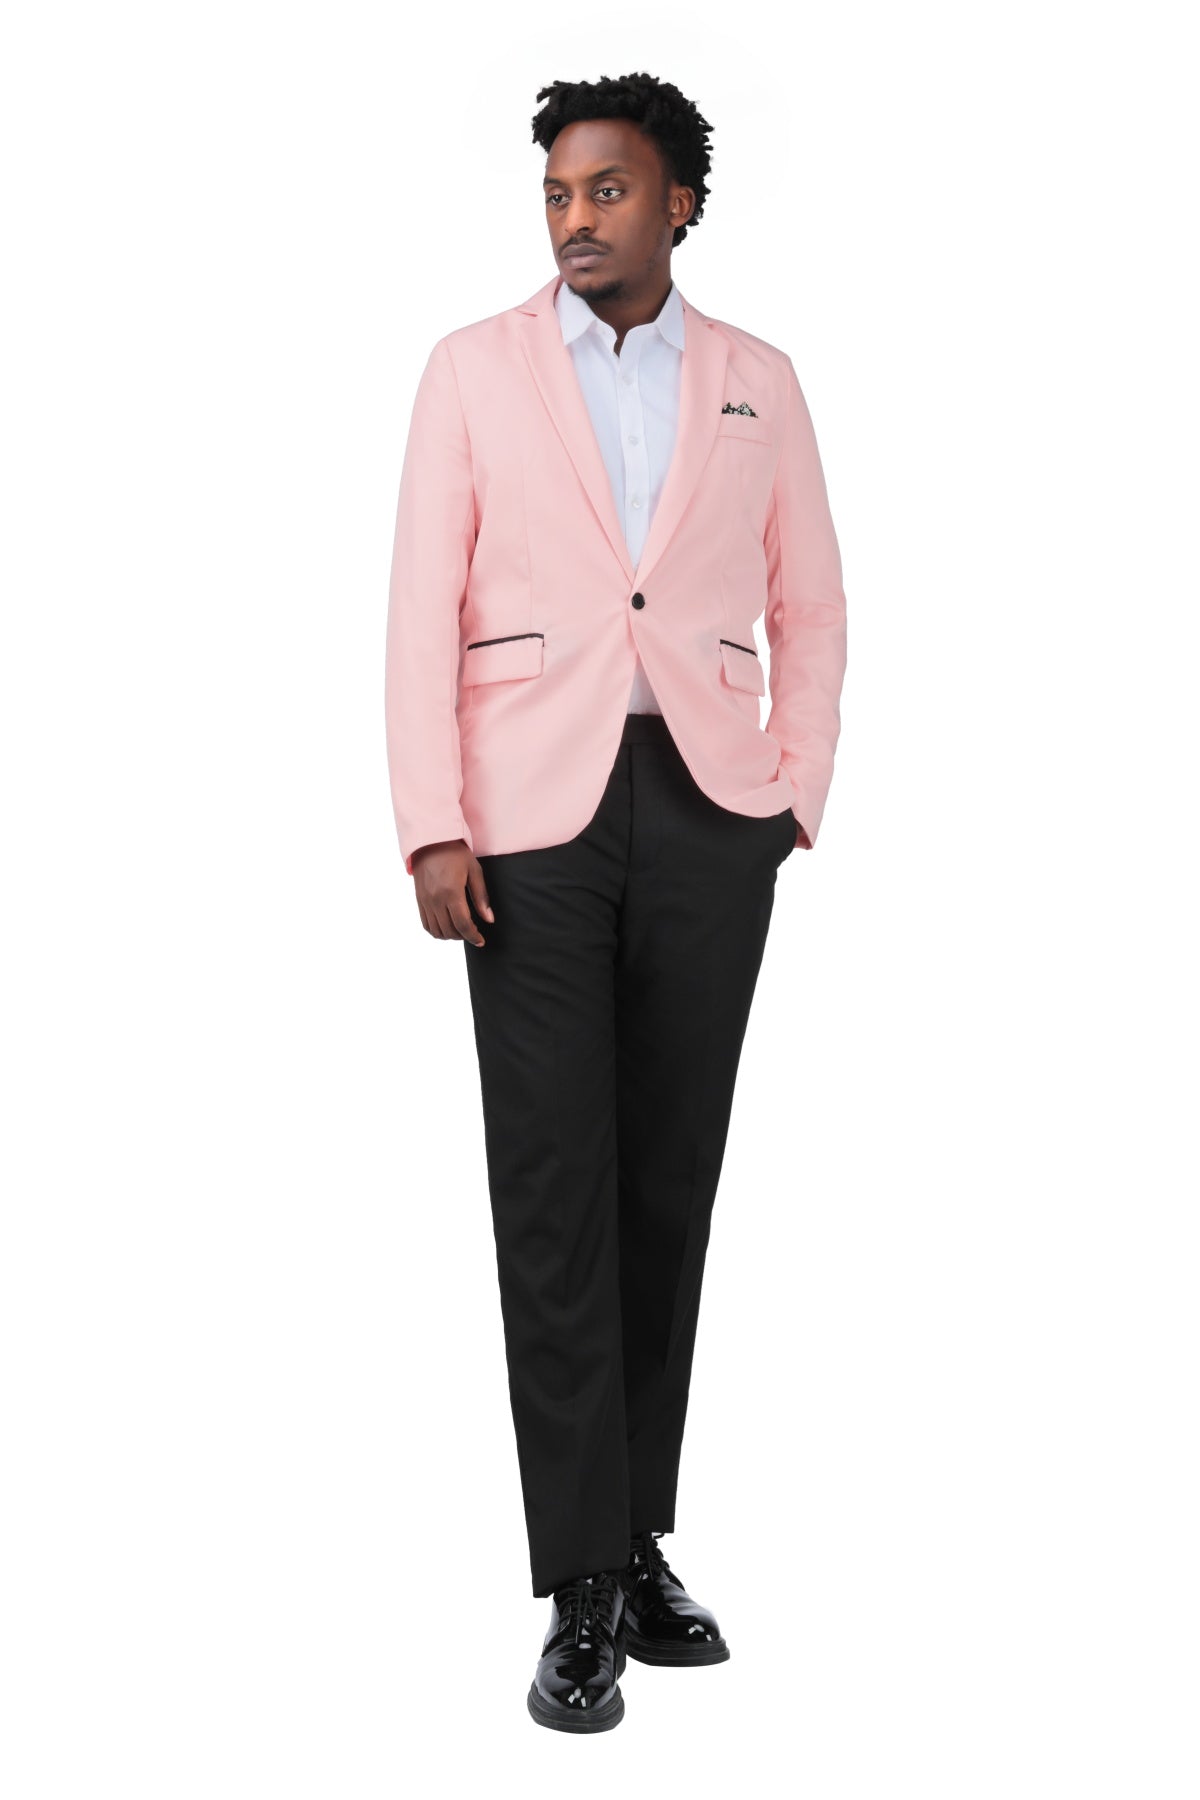 Light Pink Suit - 3 Piece | Pink suit men, Stylish mens suits, Pink suit